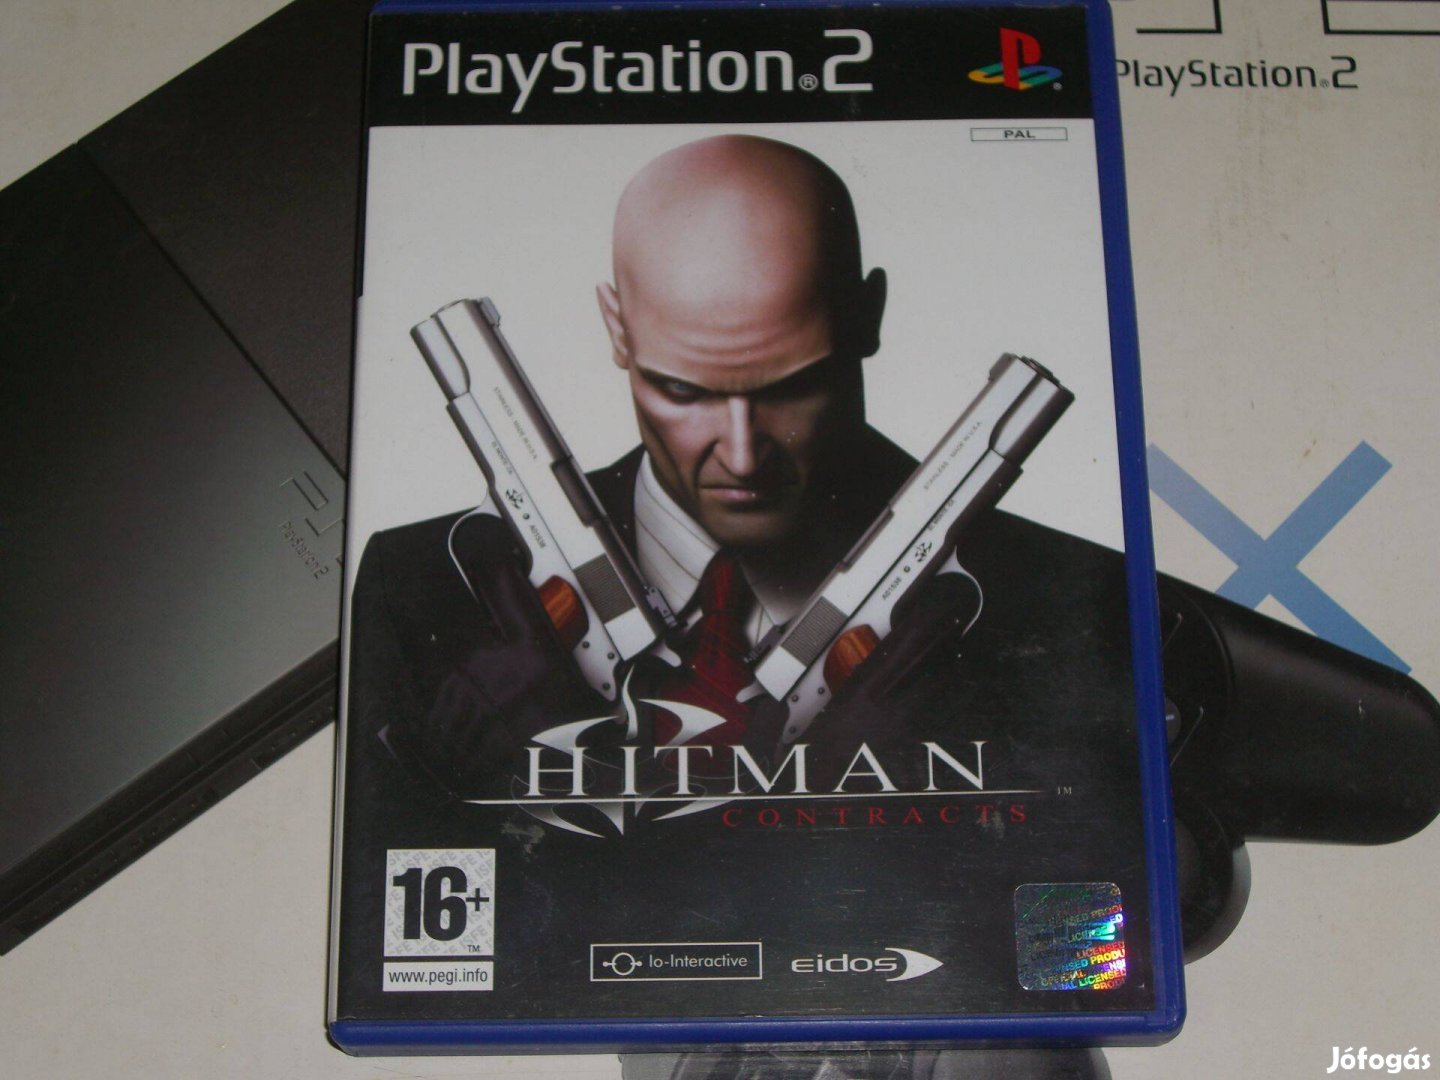 Hitman Contracts Playstation 2 eredeti lemez eladó